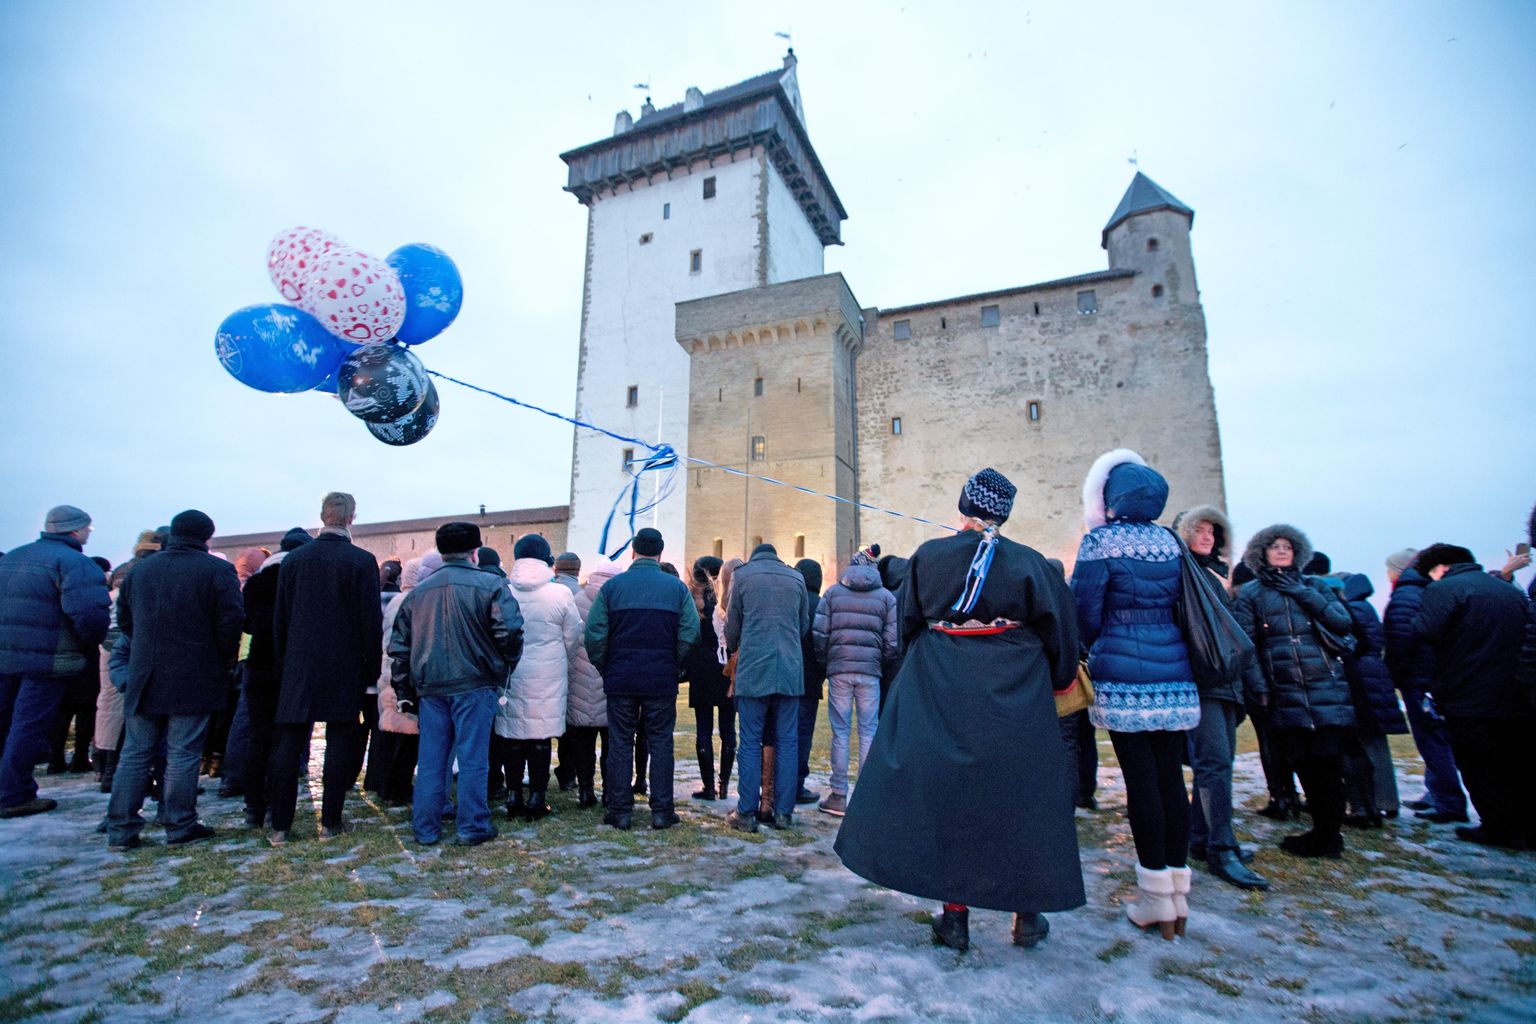 Päikesetõusul heisati Narvas asuva Hermanni linnuse torni sinimustvalge riigilipp. Pidulik tseremoonia algas kell 7.20 Eesti hümni kõlades.